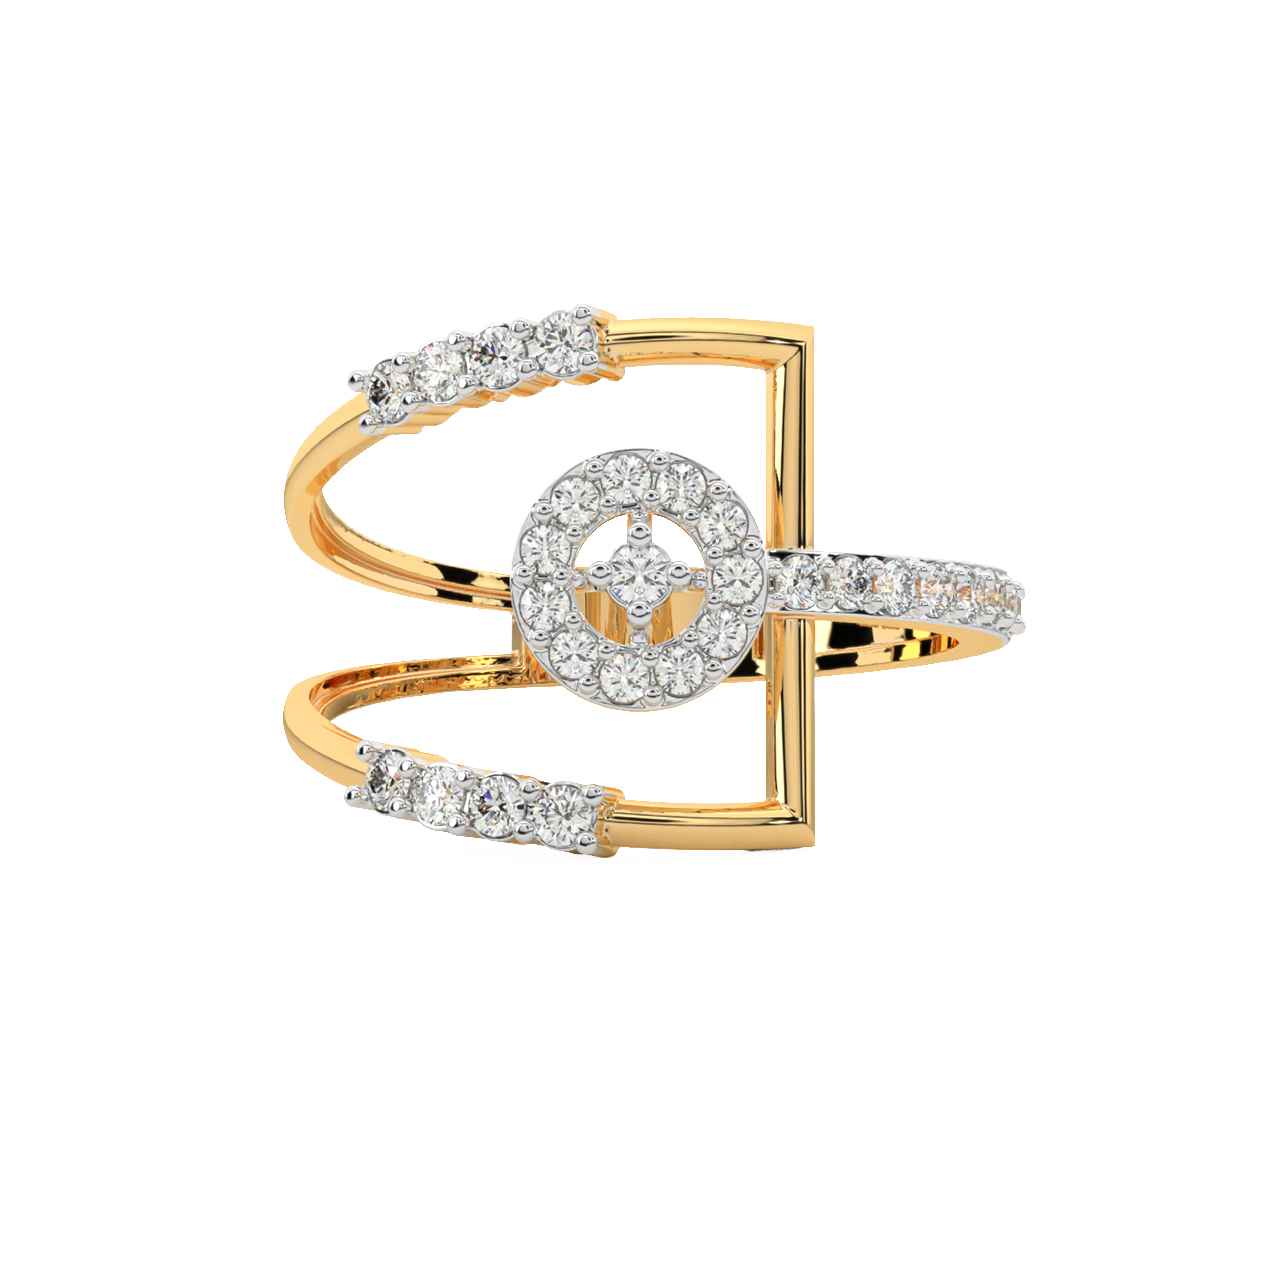 Chester Round Diamond Engagement Ring